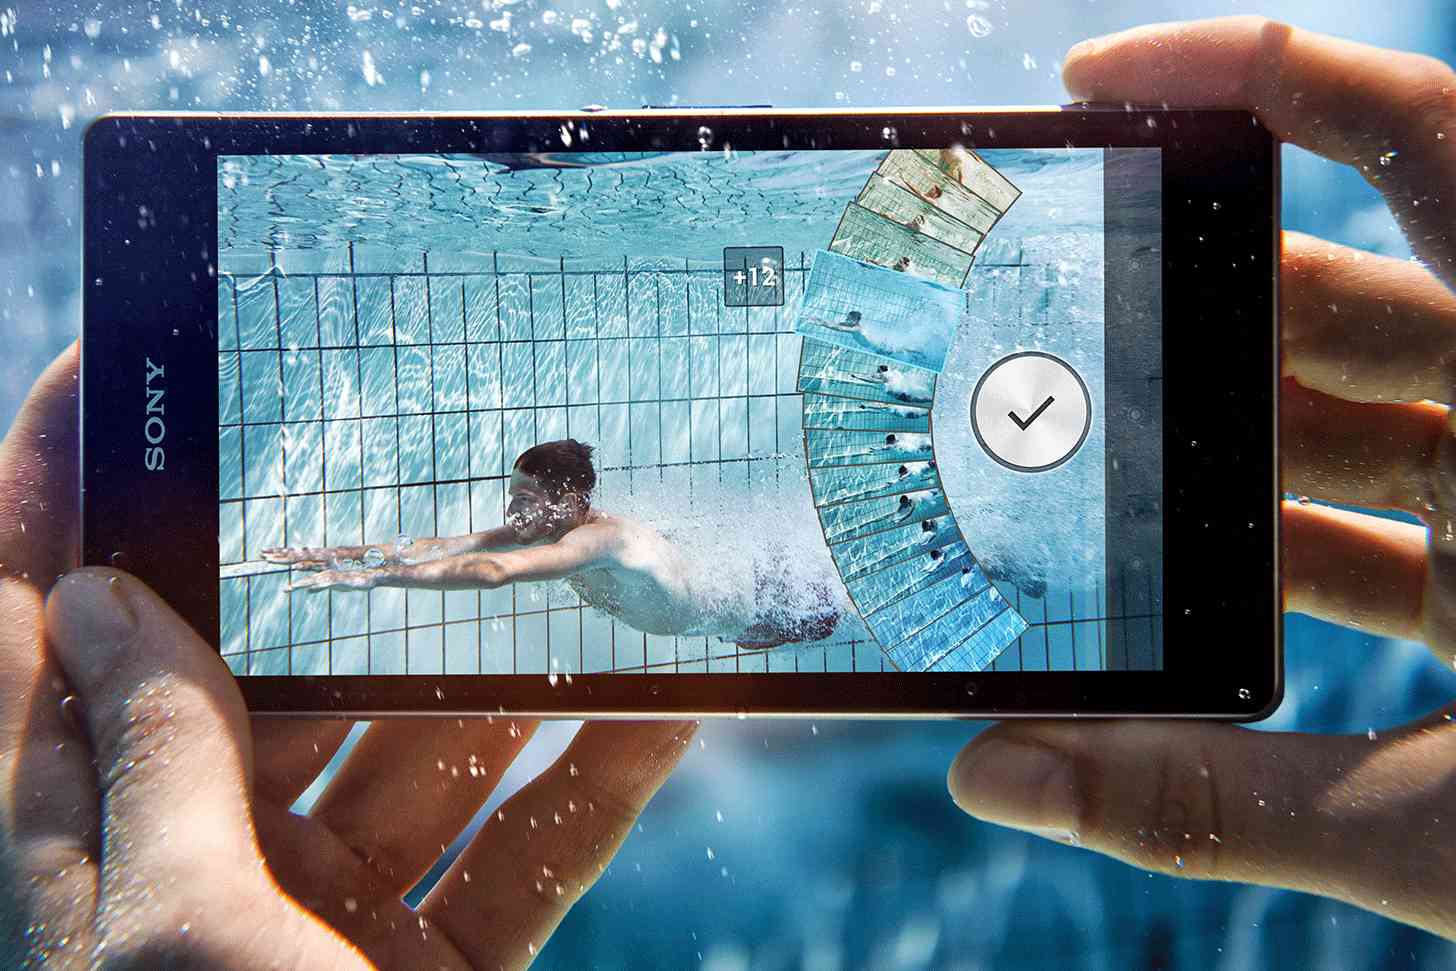 Sony Xperia Z1 underwater